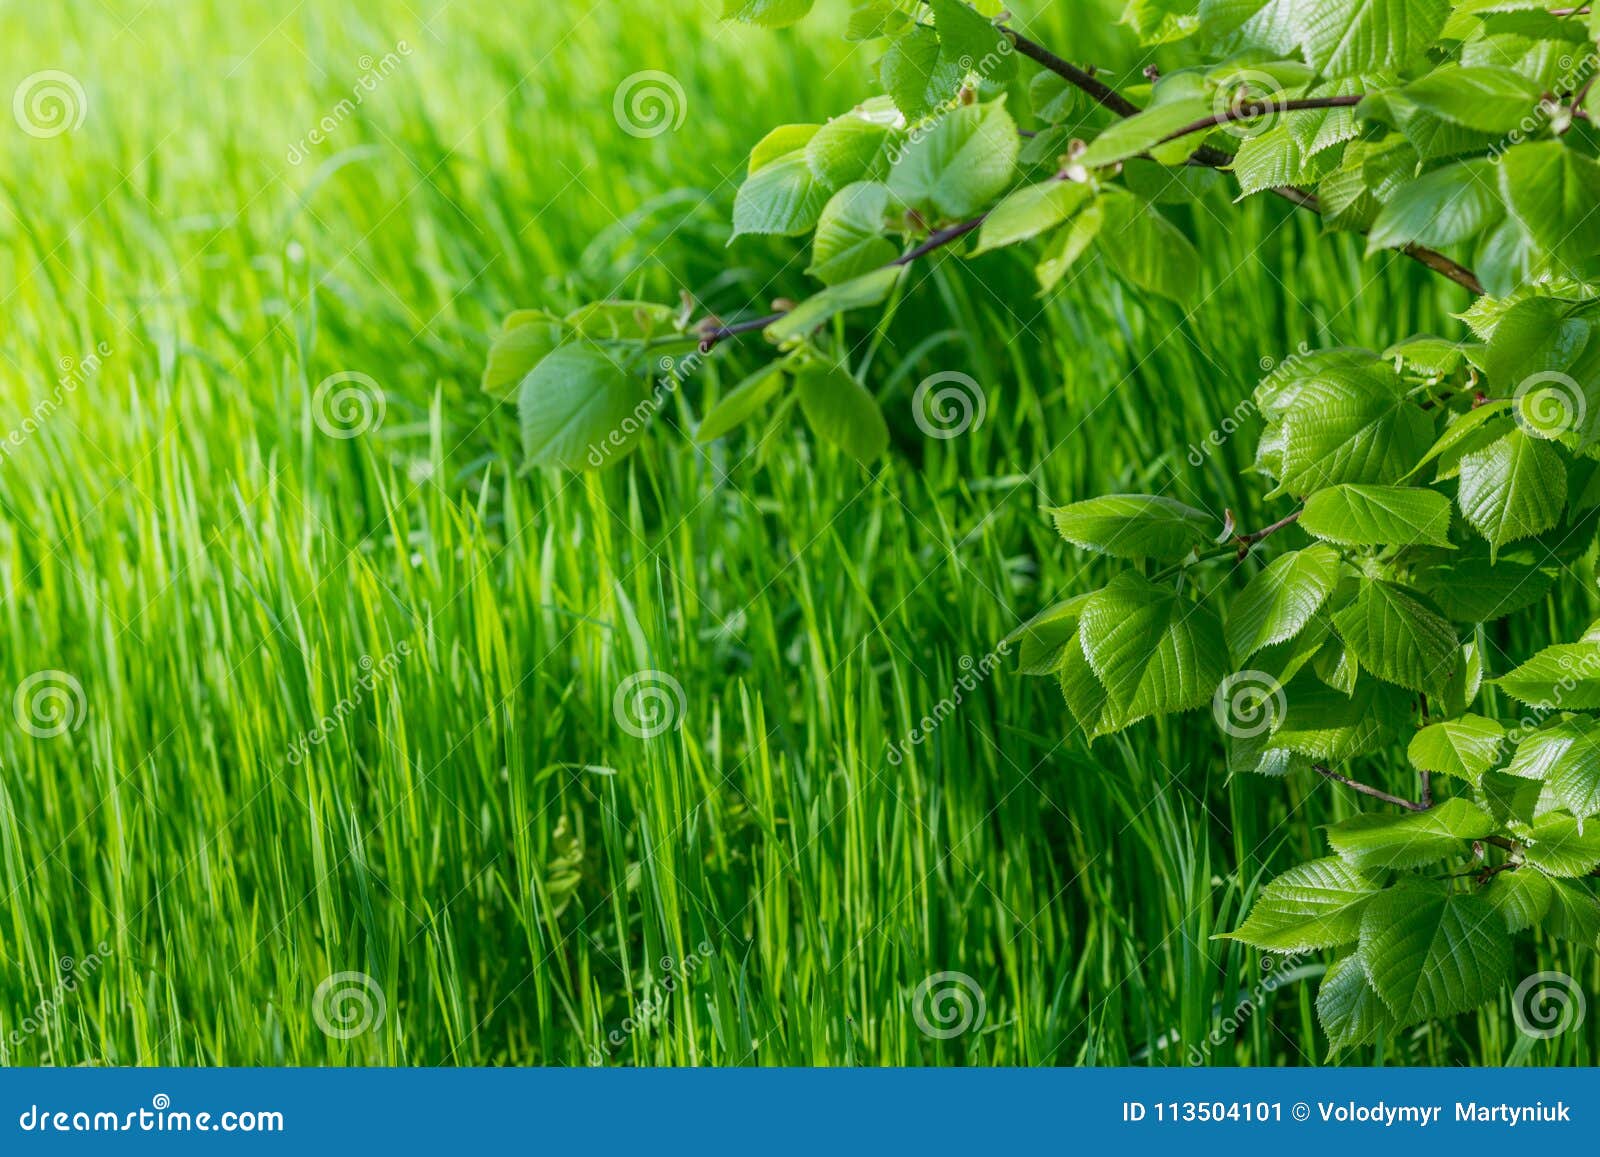 Papel pintado de la primavera Vista de la hierba verde del primer y de las hojas frescas en una rama en la luz del sol Fondo con el espacio de la copia Concepto de la ecología y de la naturaleza Foco selectivo